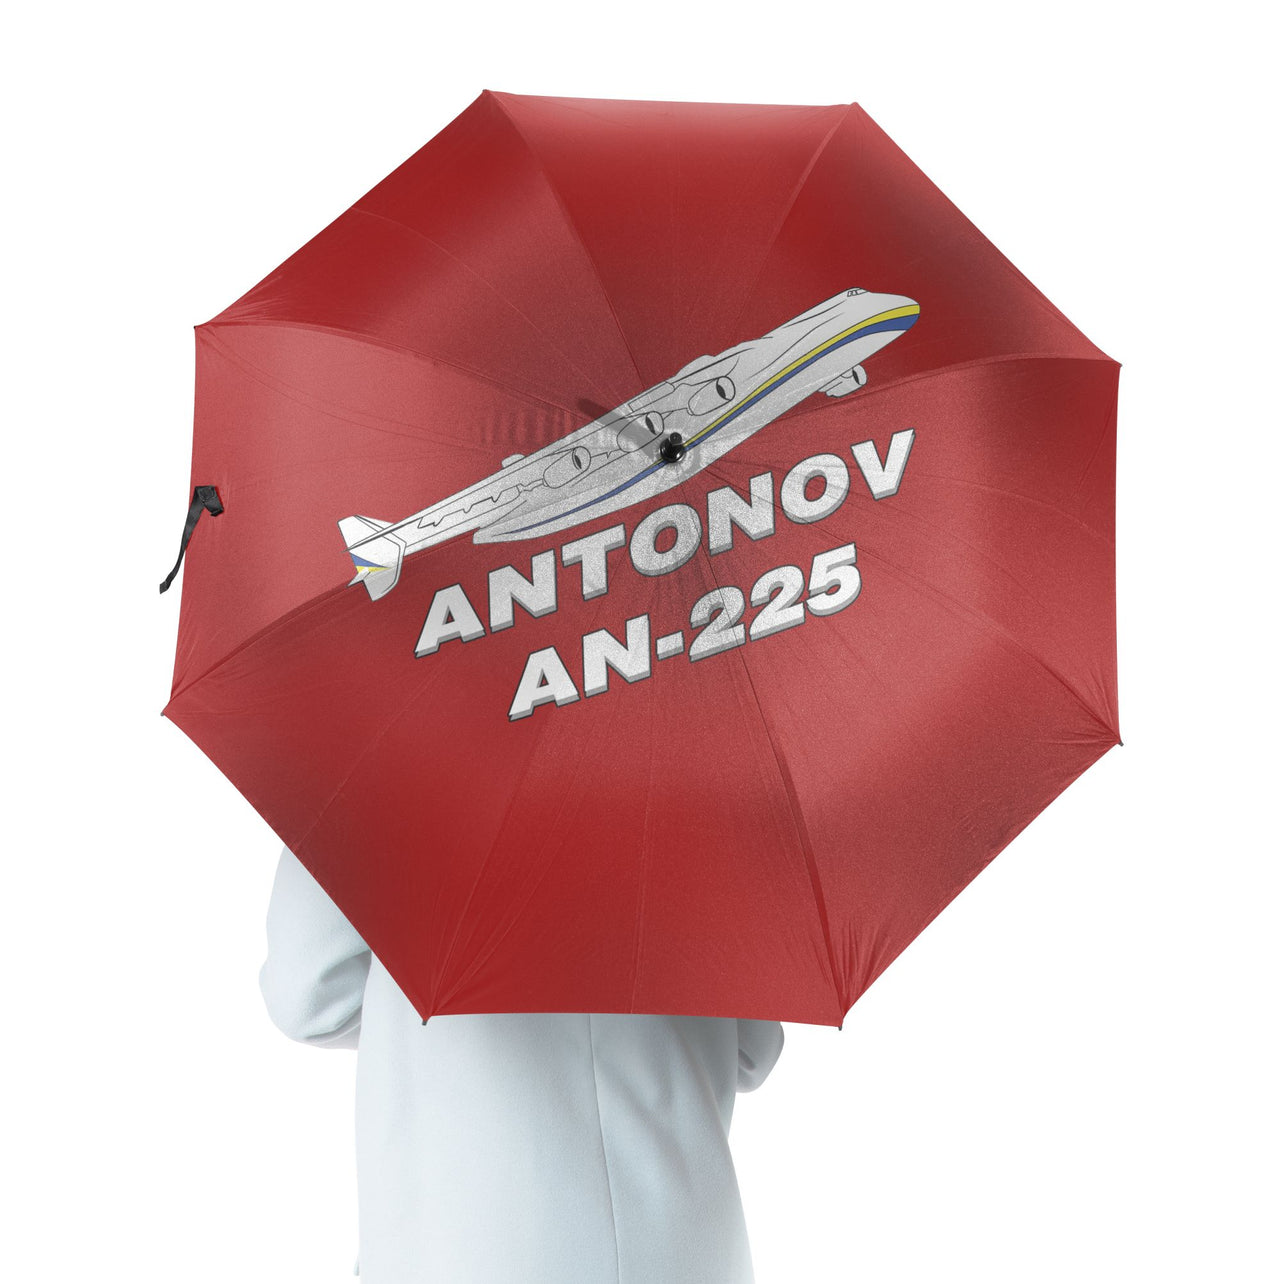 Antonov AN-225 (27) Designed Umbrella